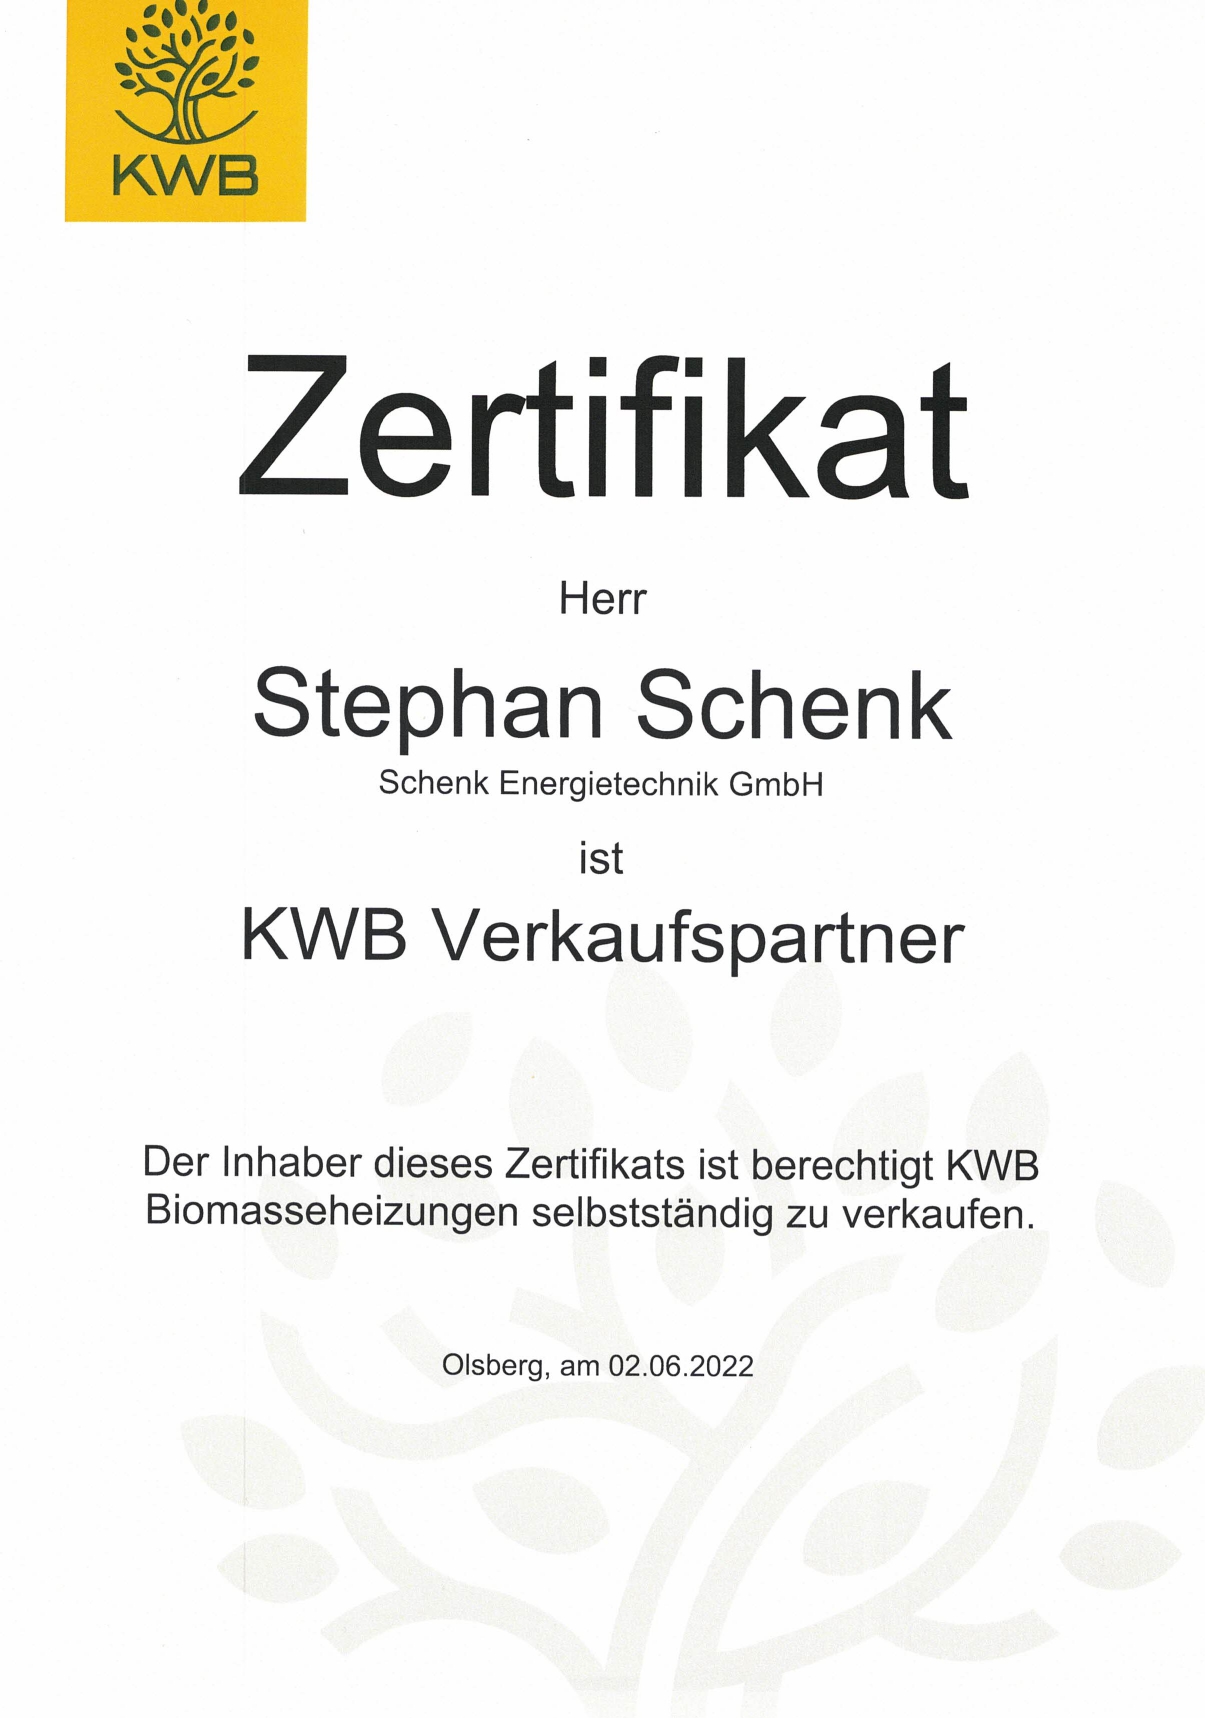 zertifikat_kwb_verkaufspartner_page-0001.jpg